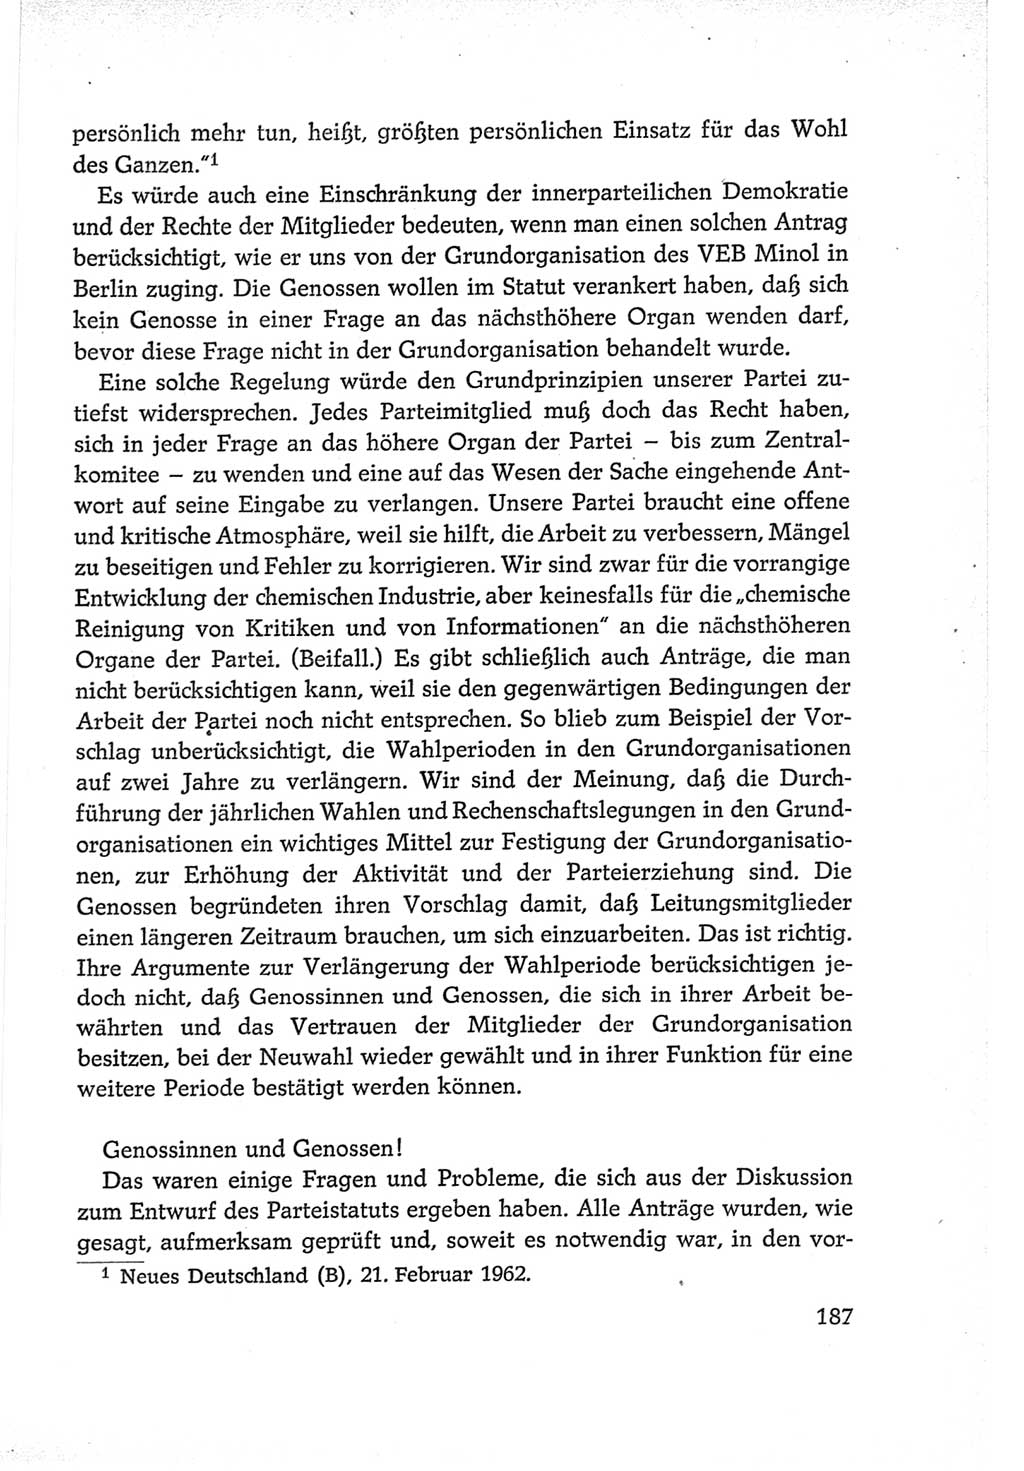 Protokoll der Verhandlungen des Ⅵ. Parteitages der Sozialistischen Einheitspartei Deutschlands (SED) [Deutsche Demokratische Republik (DDR)] 1963, Band Ⅱ, Seite 187 (Prot. Verh. Ⅵ. PT SED DDR 1963, Bd. Ⅱ, S. 187)